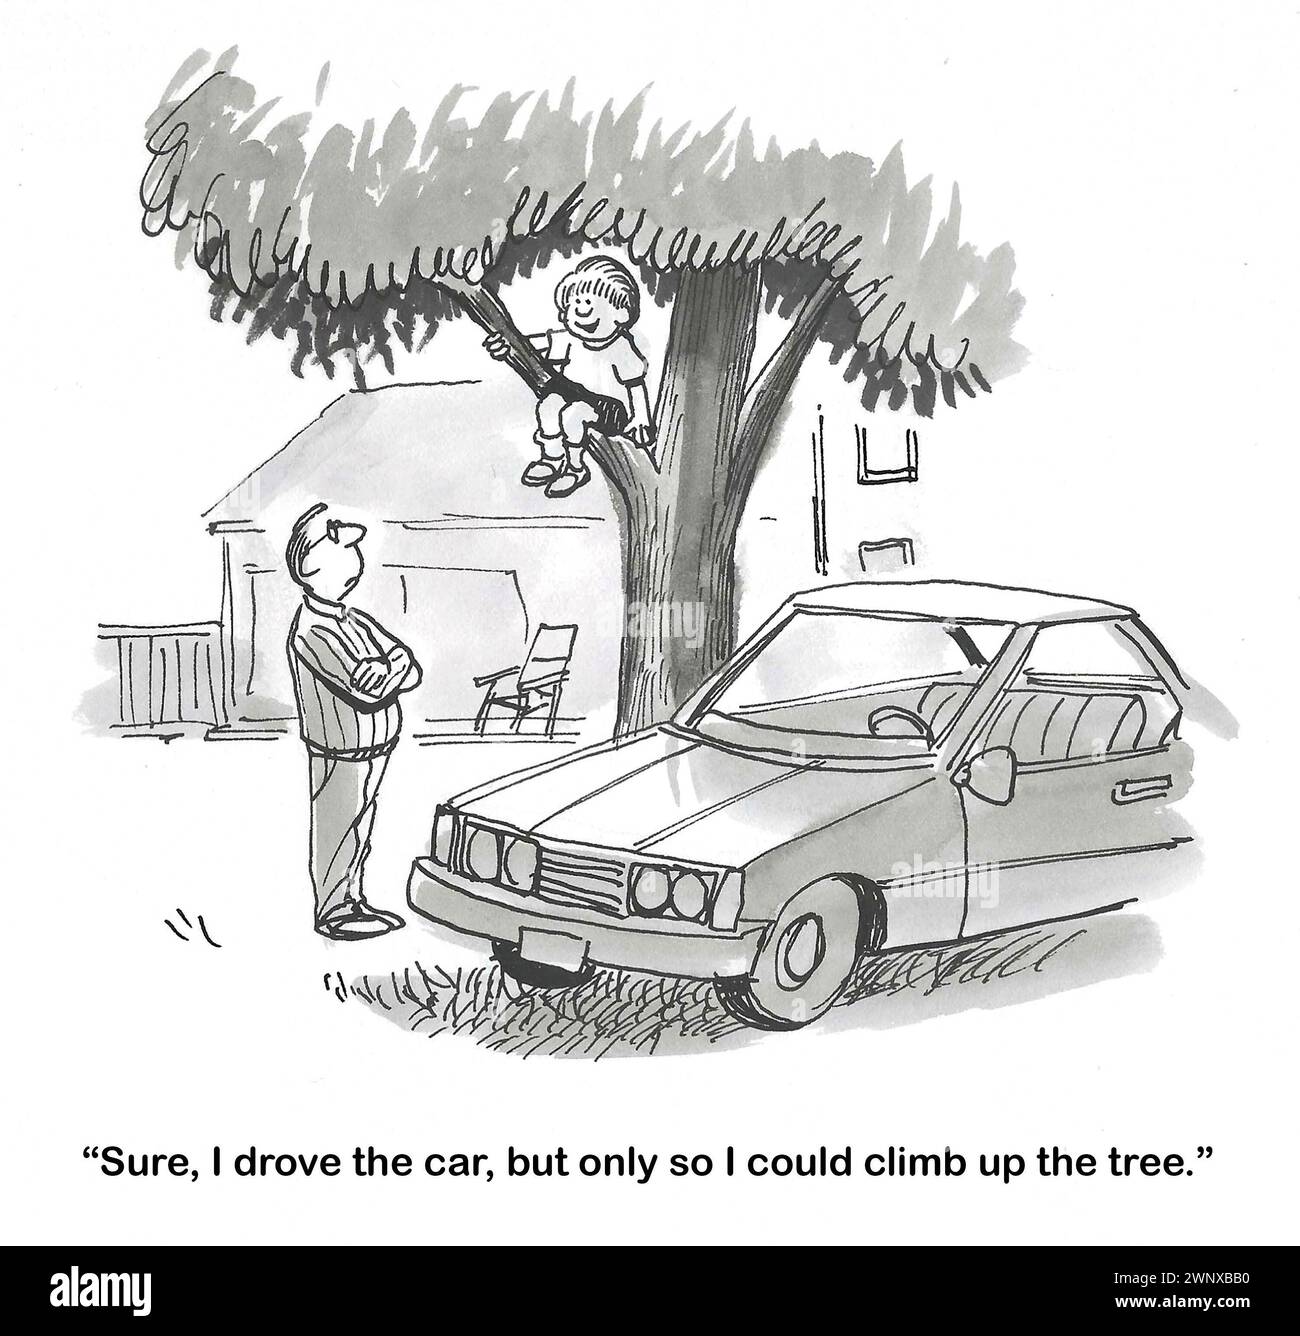 BW dessin animé d'un jeune garçon expliquant à son père pourquoi il a conduit la voiture à l'arbre. Banque D'Images